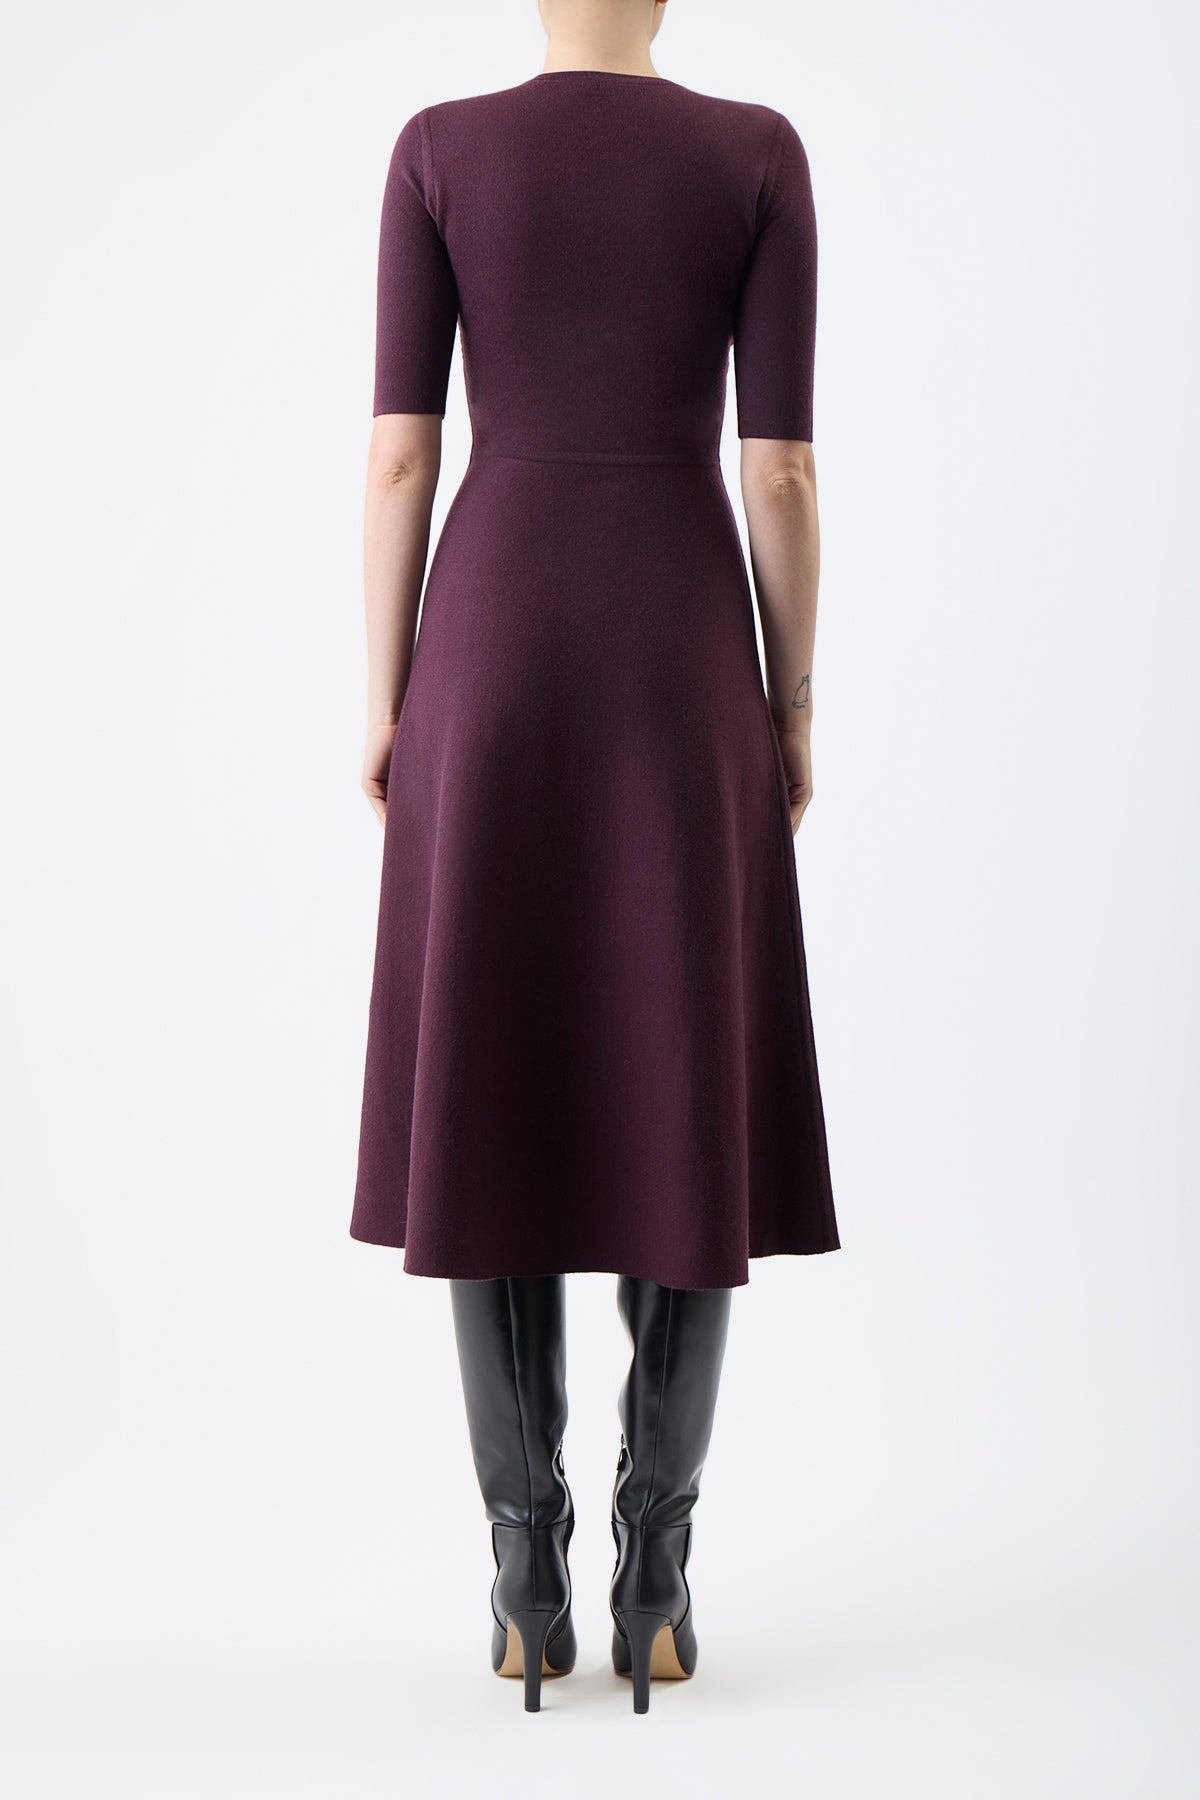 Seymore Knit Dress in Deep Bordeaux Merino Wool Cashmere